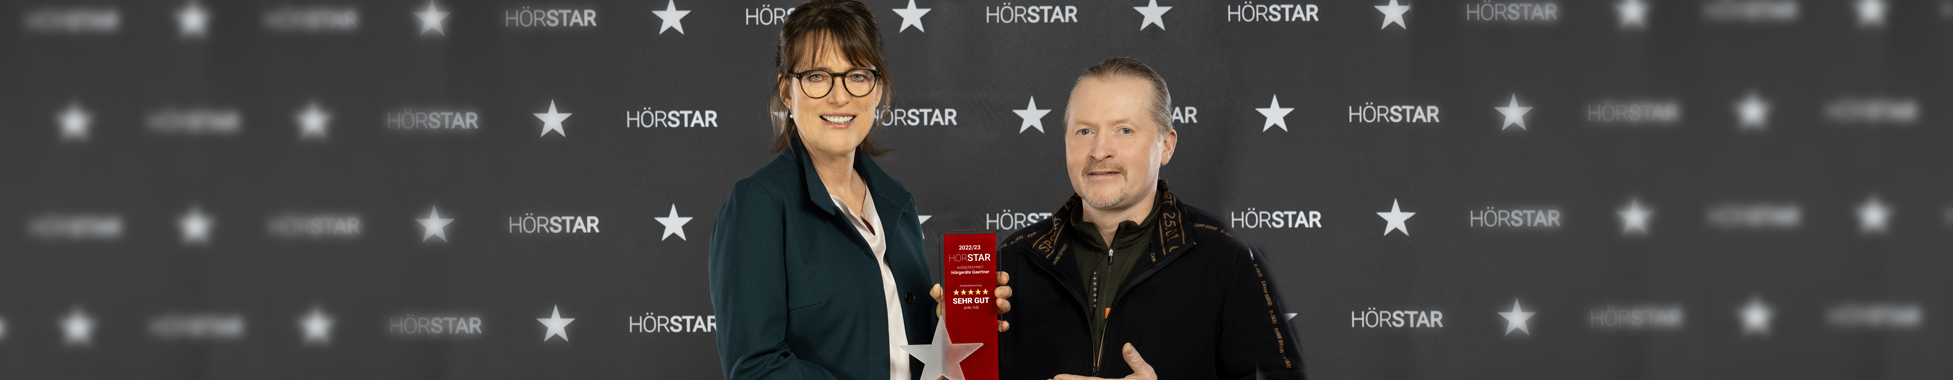 Joey Kelly überreicht den Kundenpreis Premium-HörStar